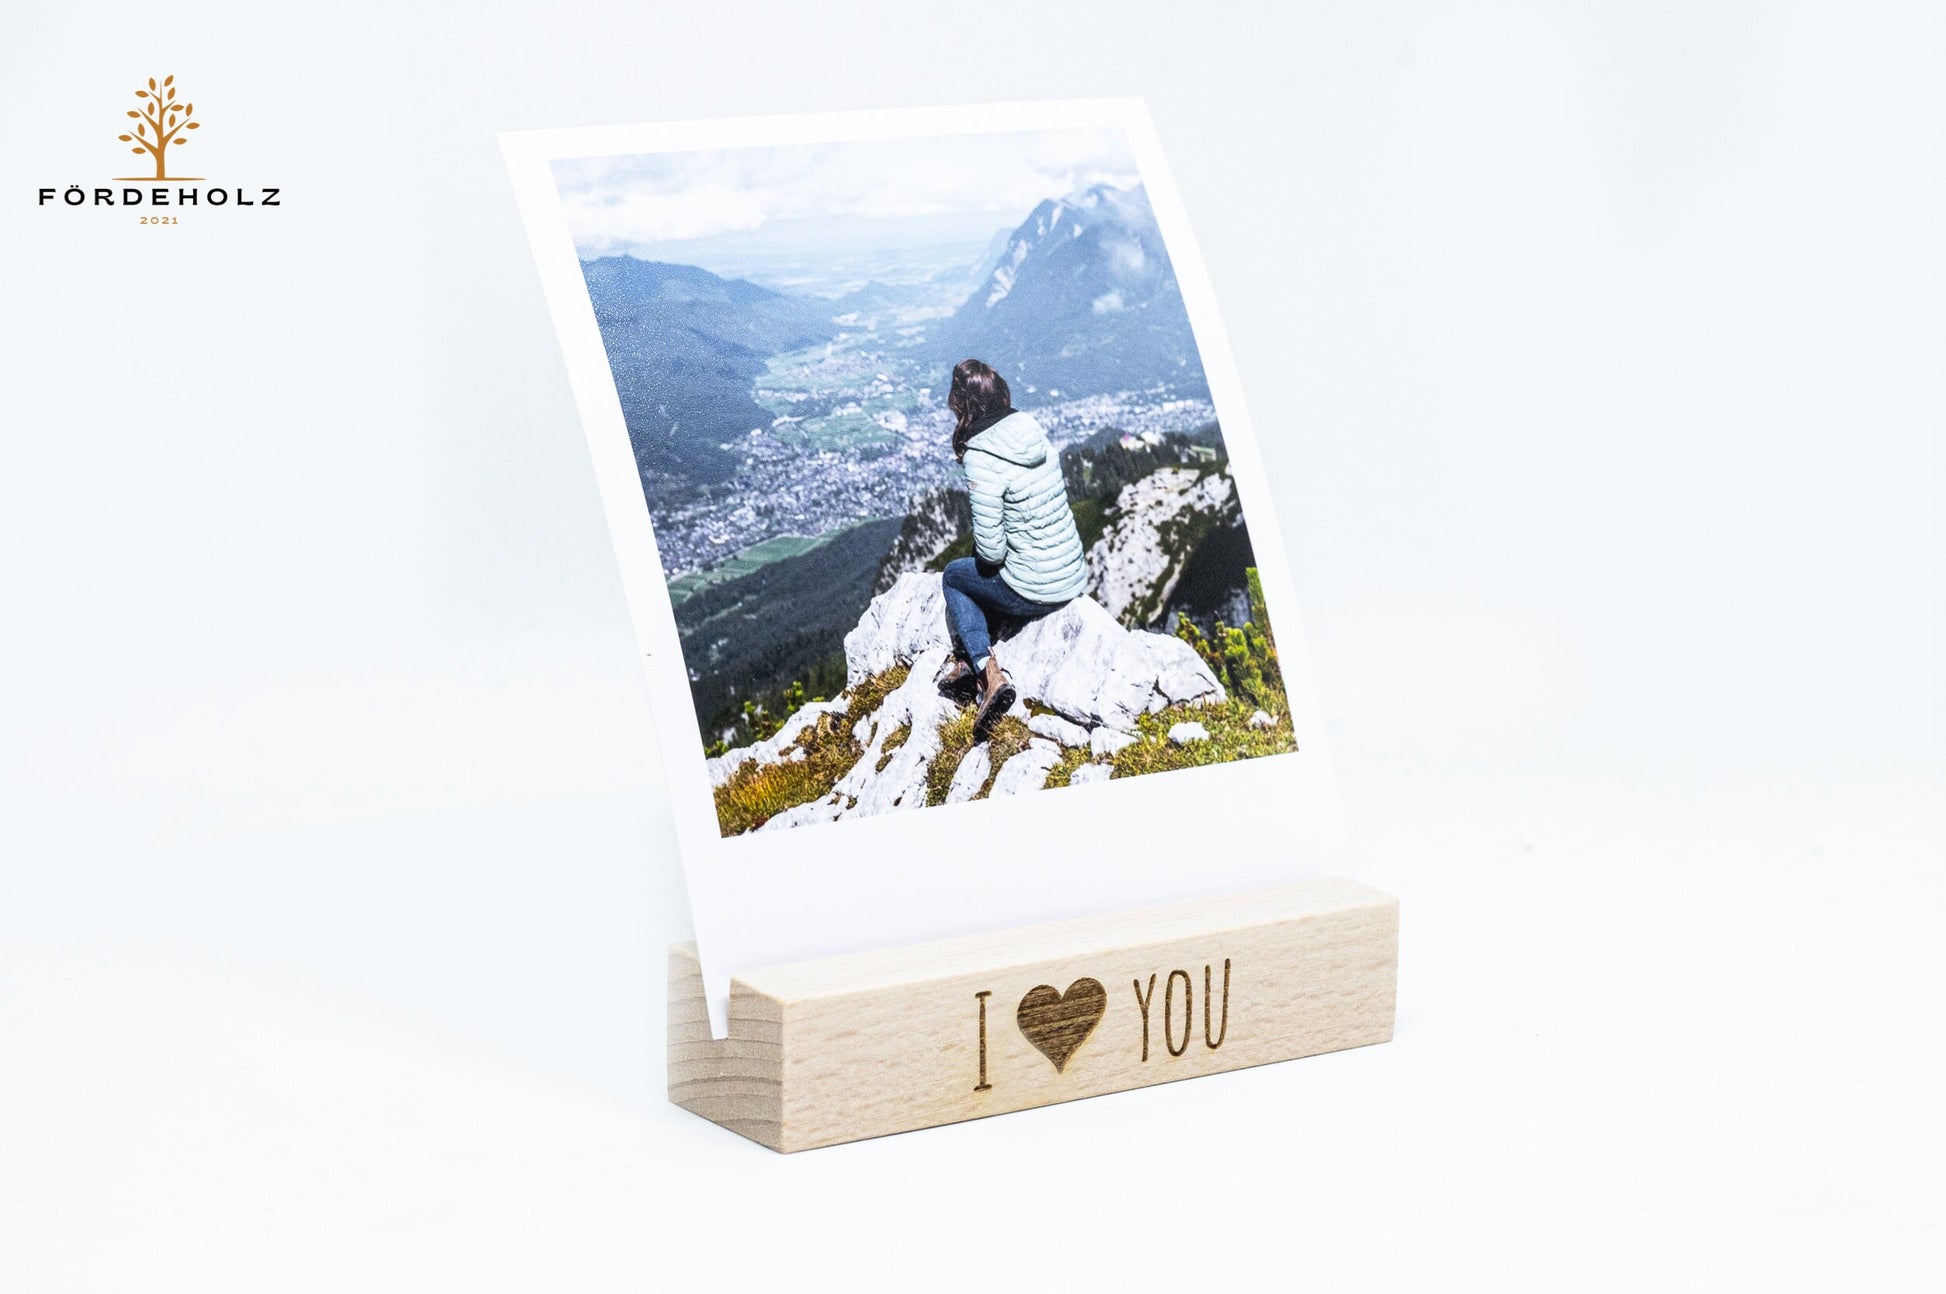 Foto- und Kartenhalter aus Holz, Holzkartenhalter, Kartenaufsteller, Buchenholz "I love you" - Geschenk Valentinstag, Hochzeit, Verlobung